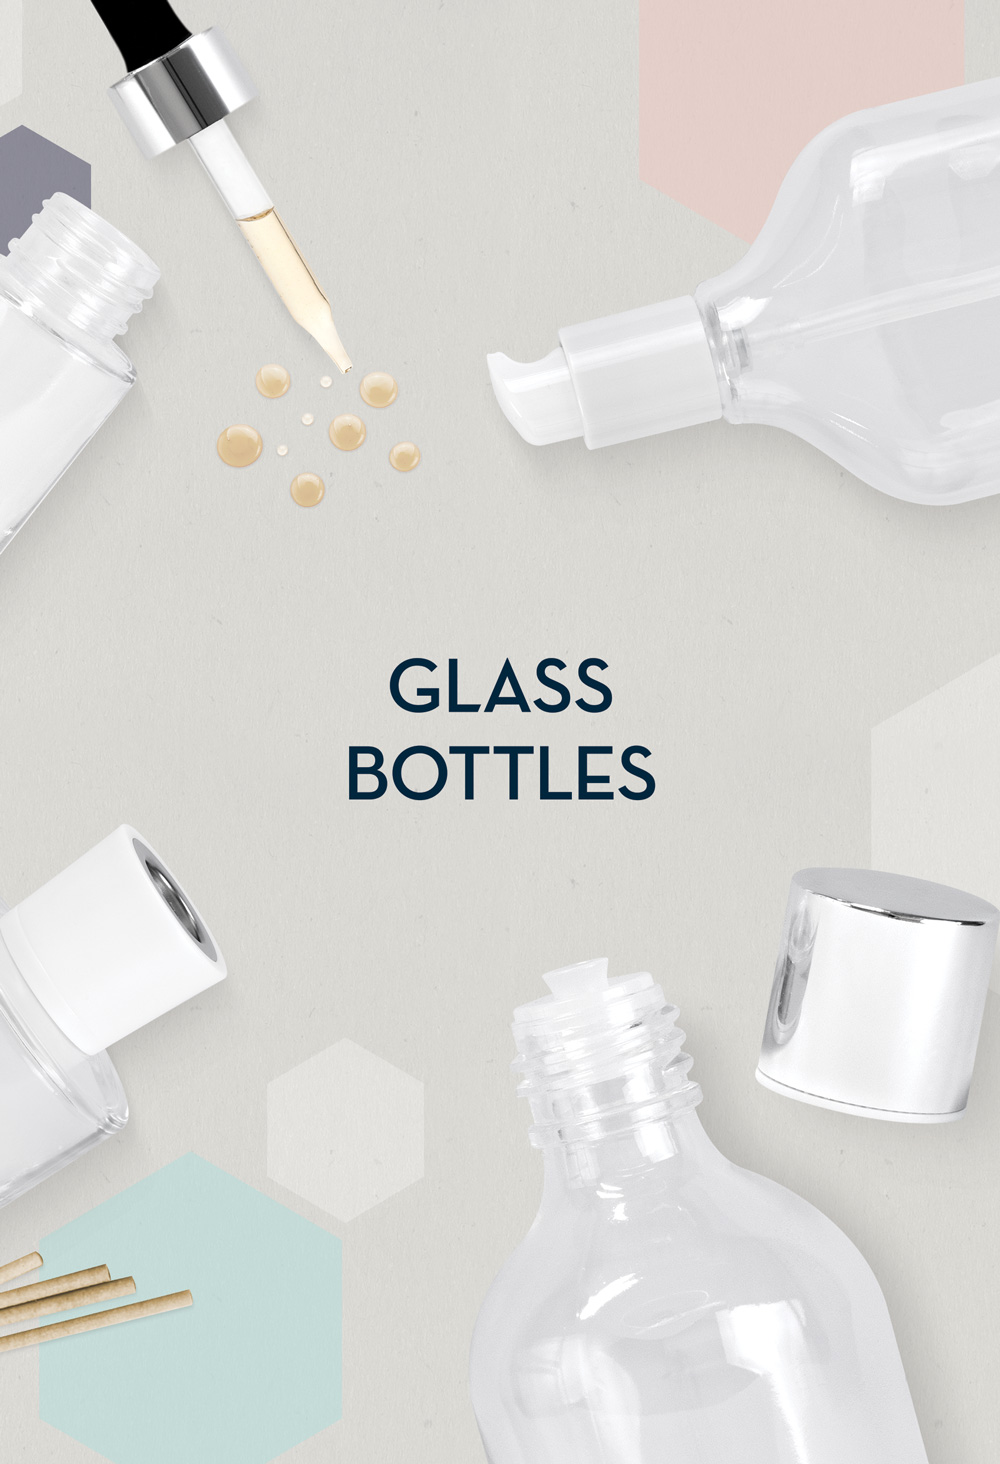 Glass Bottles - Fasten